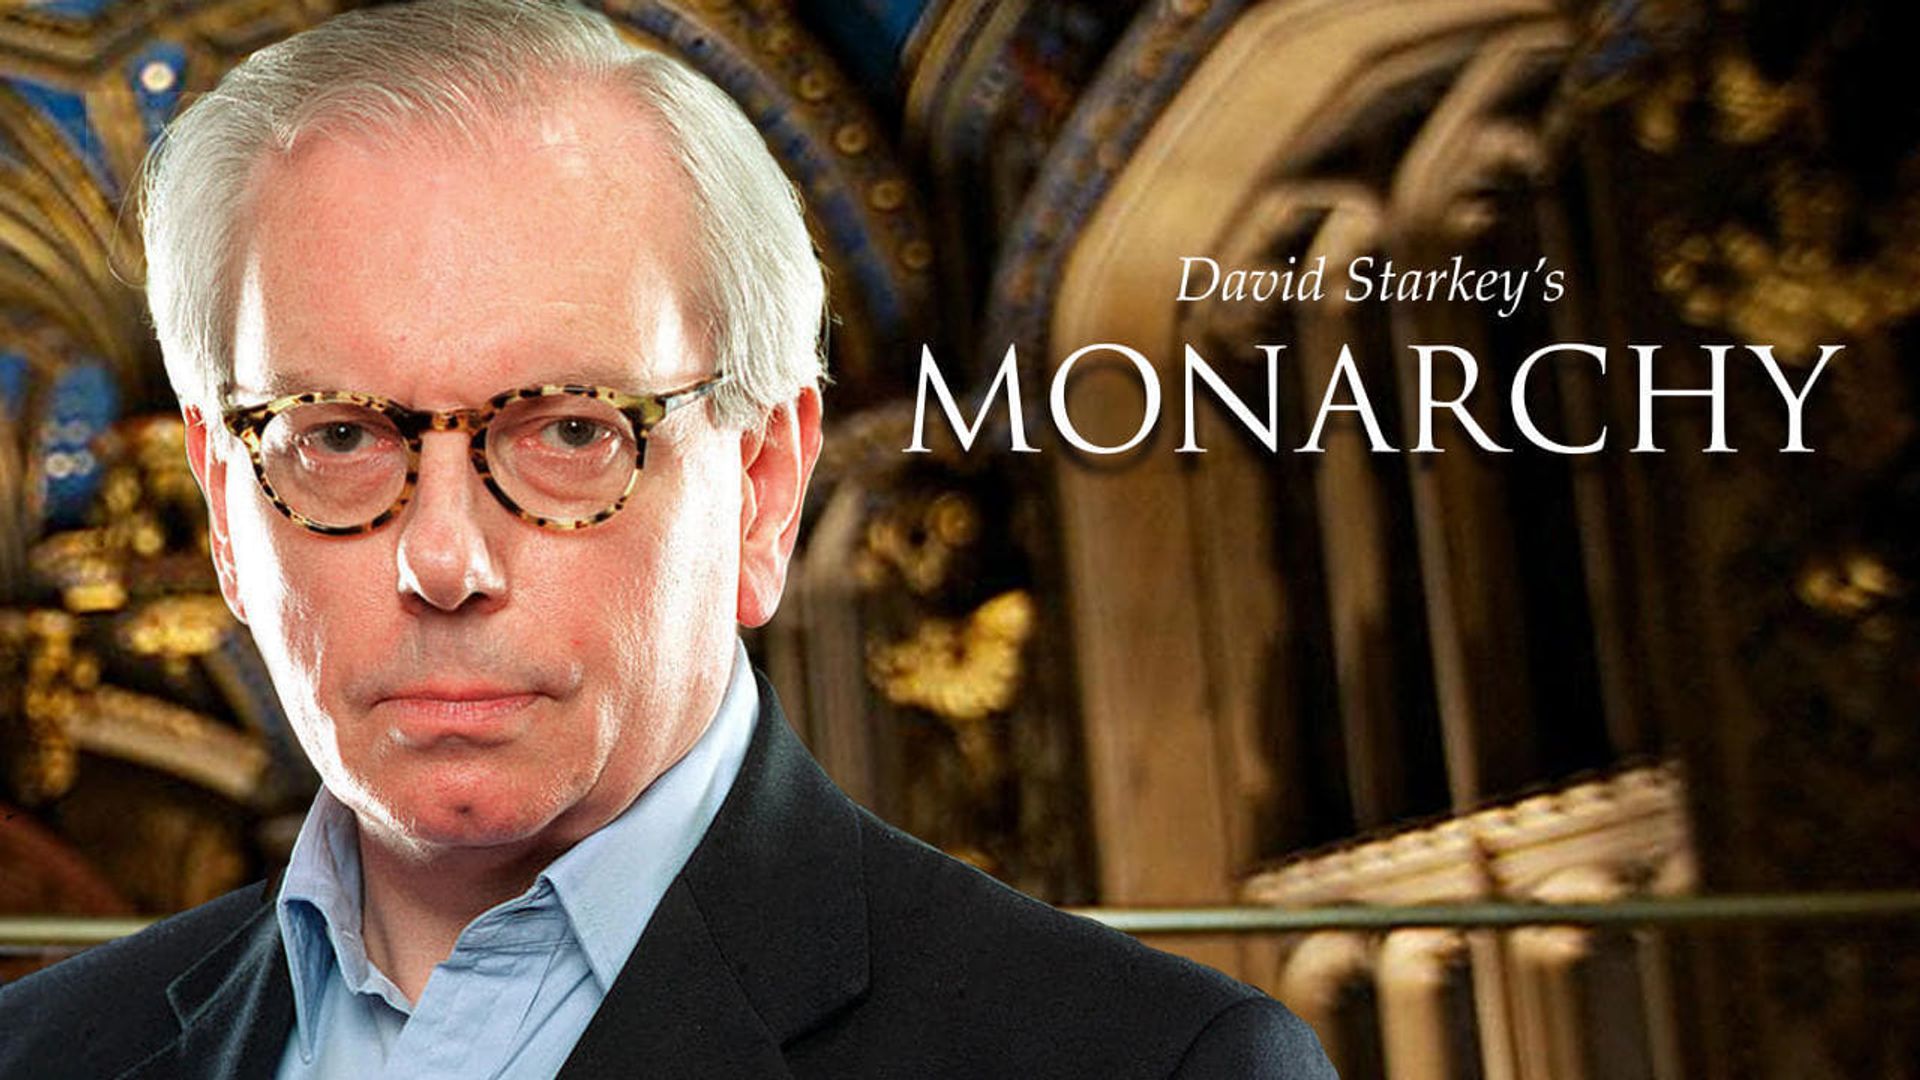 Monarchy with David Starkey background